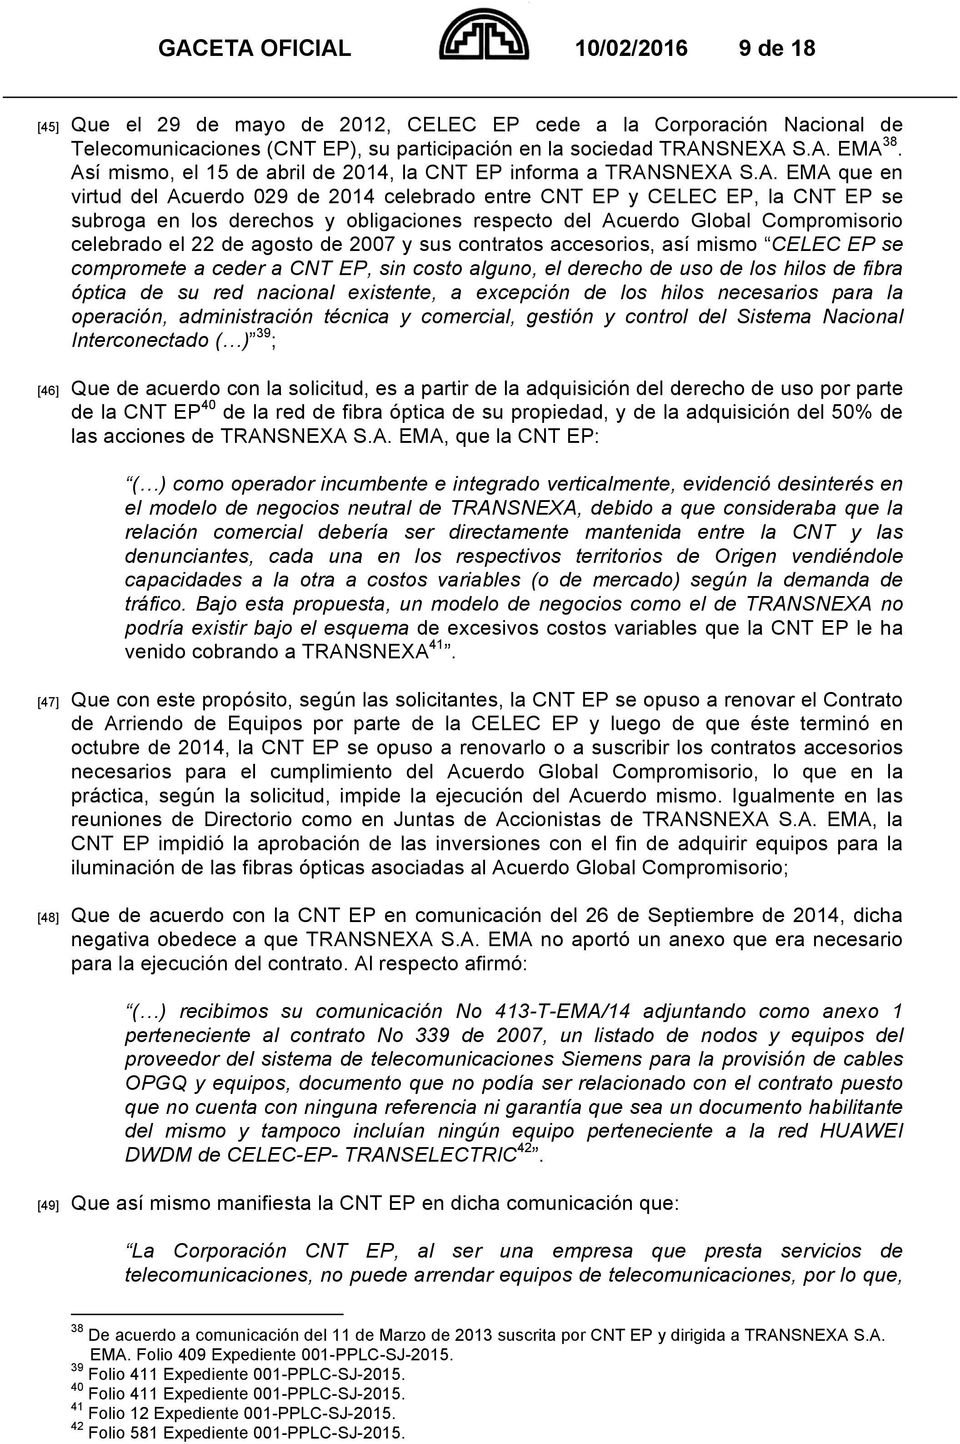 respecto del Acuerdo Global Compromisorio celebrado el 22 de agosto de 2007 y sus contratos accesorios, así mismo CELEC EP se compromete a ceder a CNT EP, sin costo alguno, el derecho de uso de los